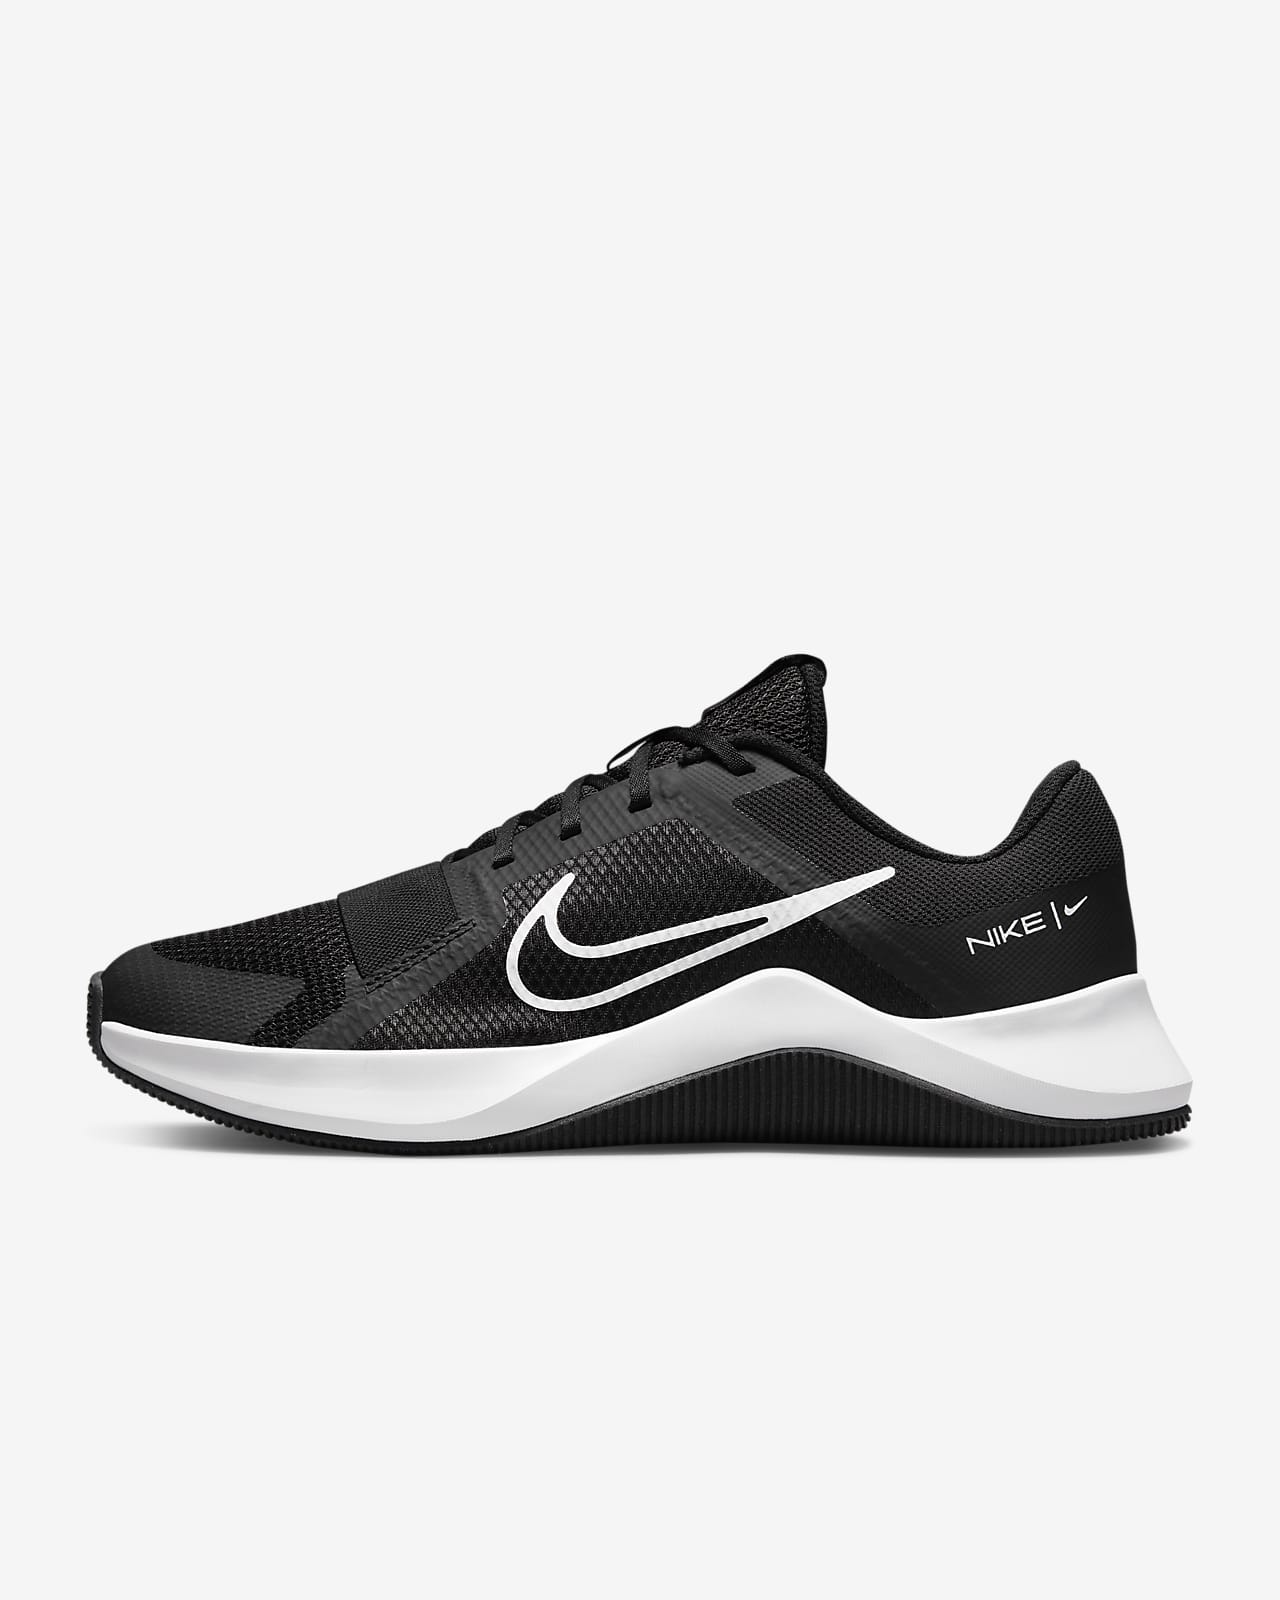 Chaussure de training Nike MC Trainer 2 pour homme